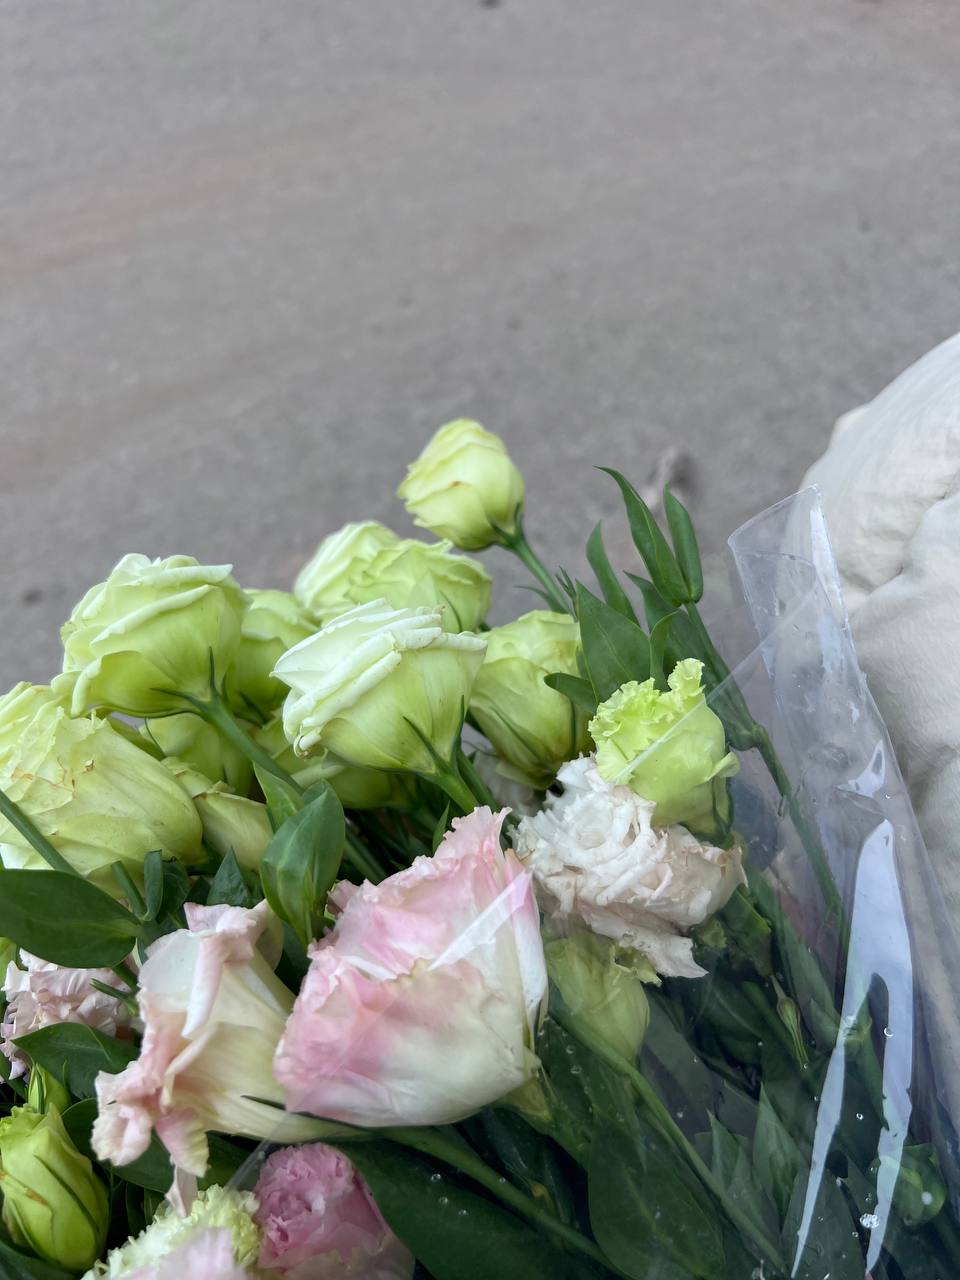 Mách bạn bí kíp mua hoa chợ Quảng Bá giá rẻ mà vẫn đẹp - Ảnh 8.